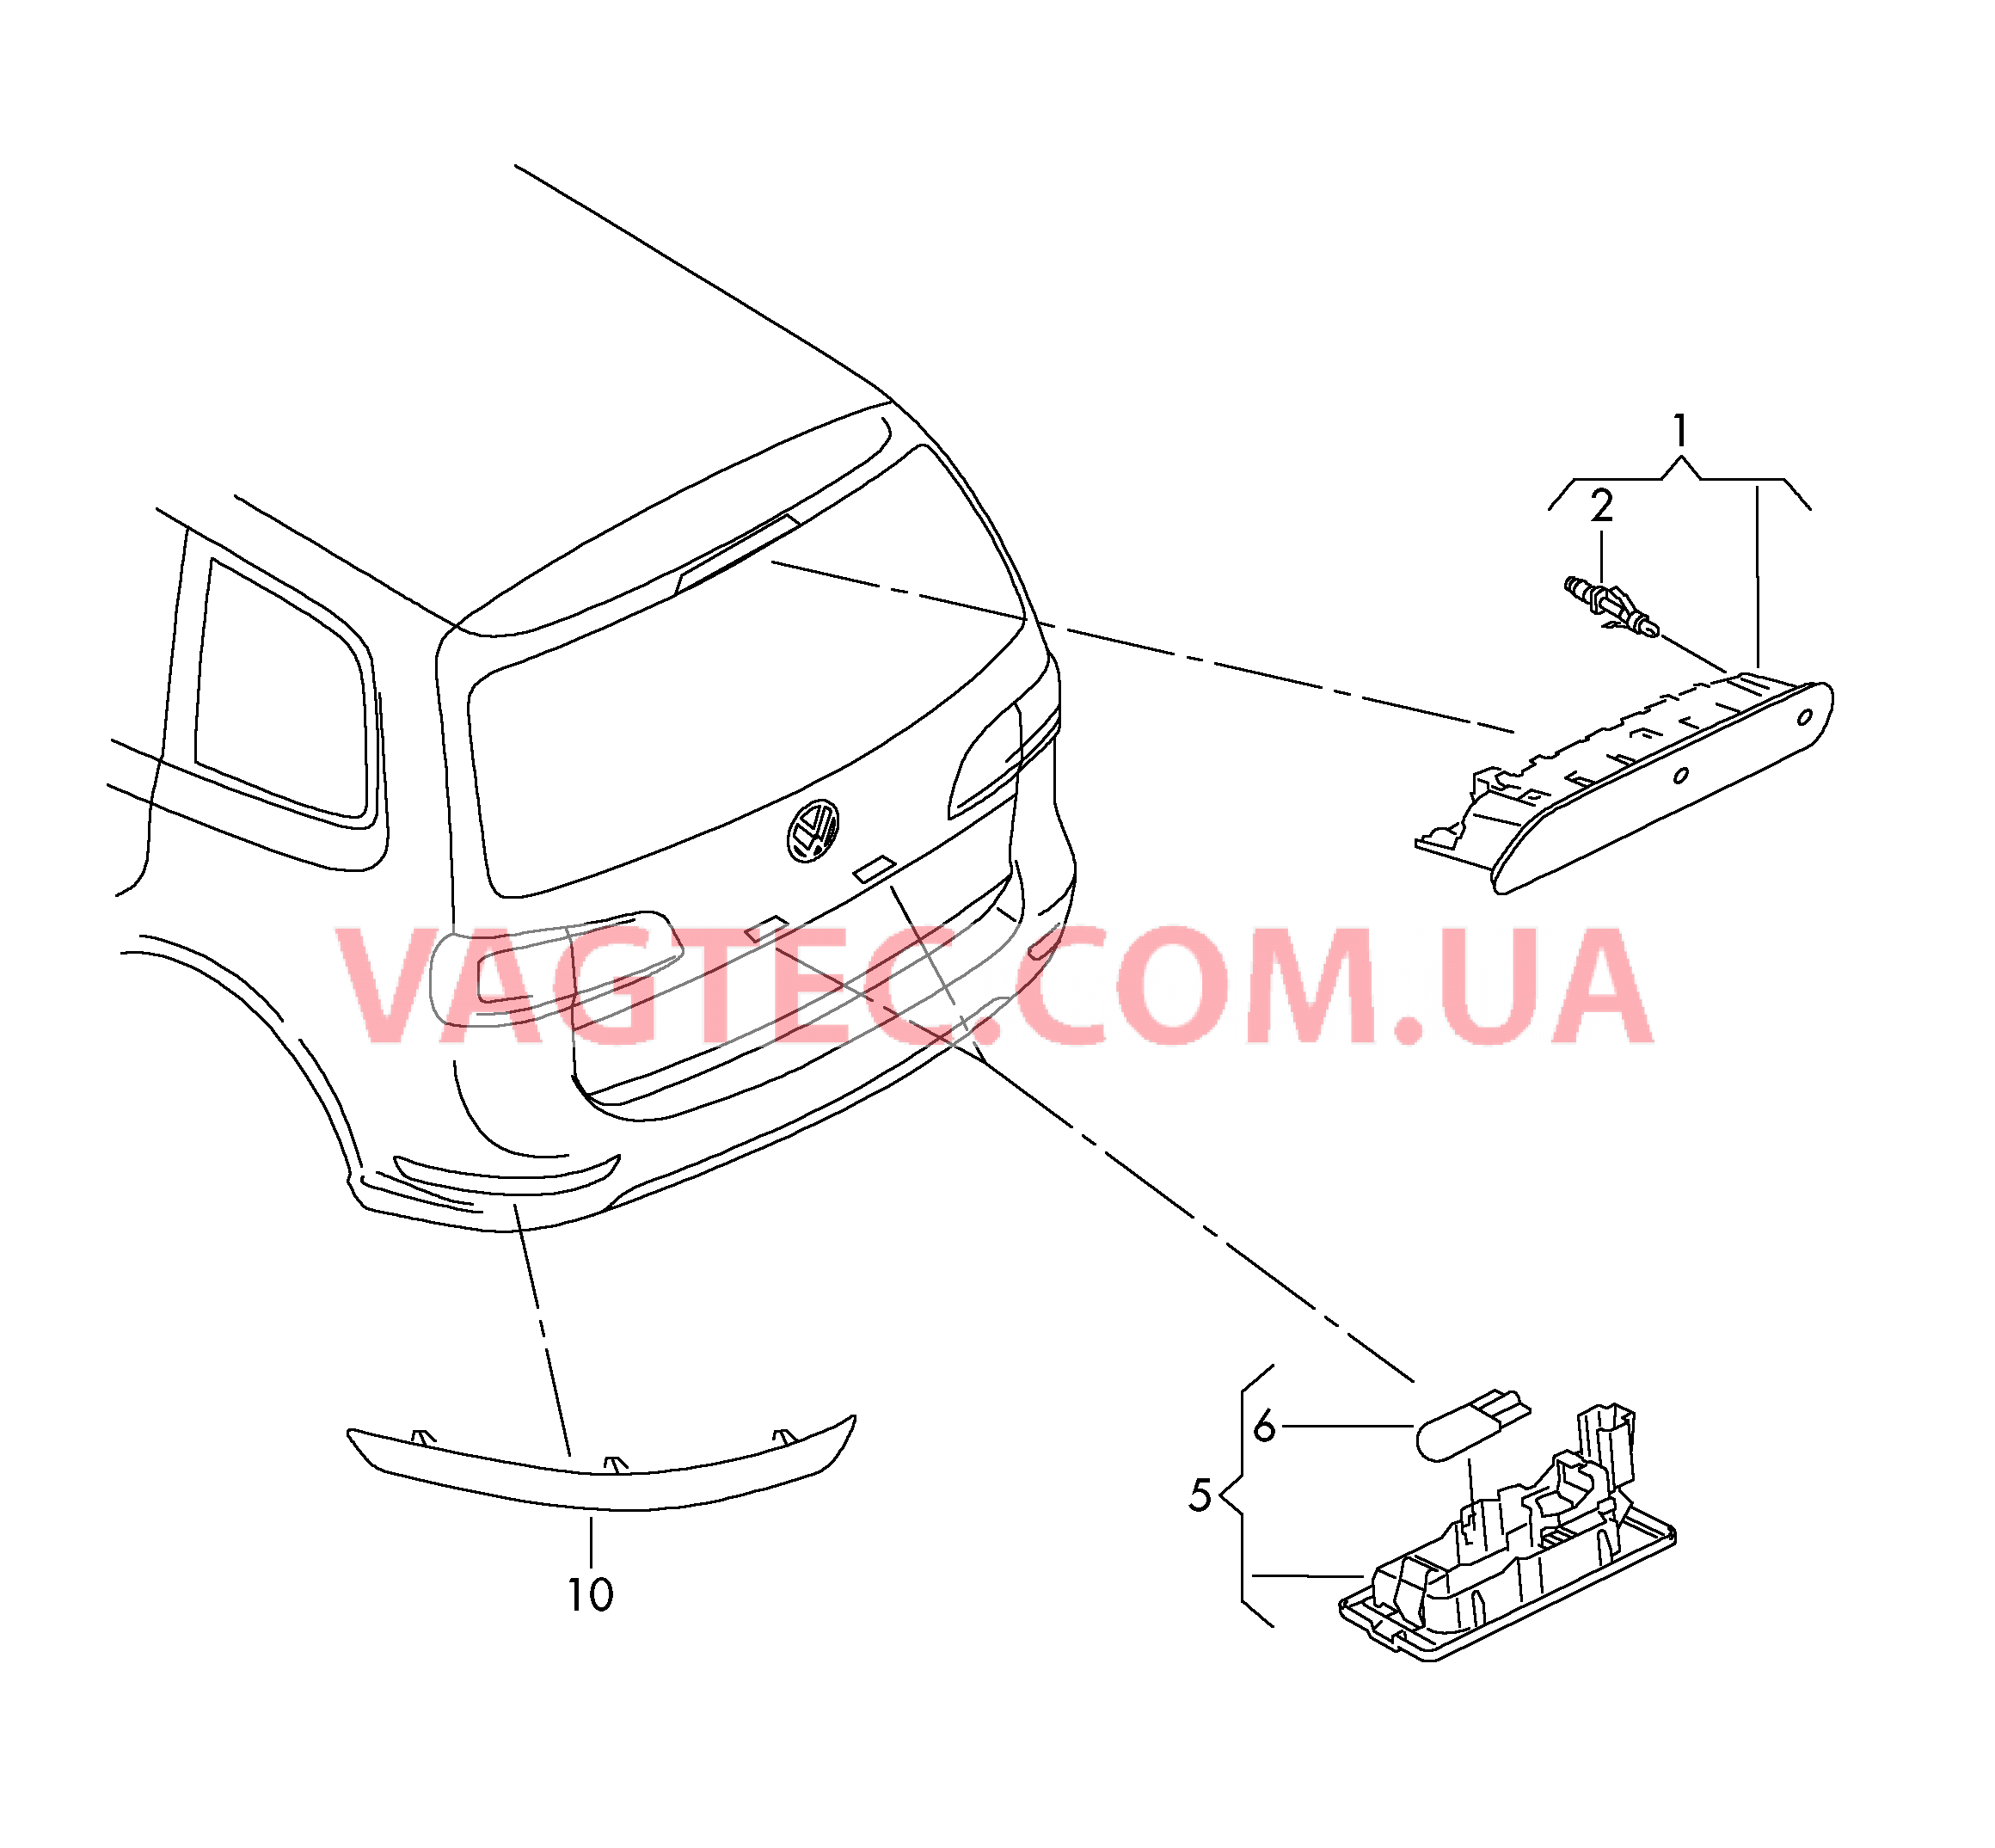 Верхний стоп-сигнал Плафон освещ. номерного знака Cветовозвращатель  для SEAT Alhambra 2018